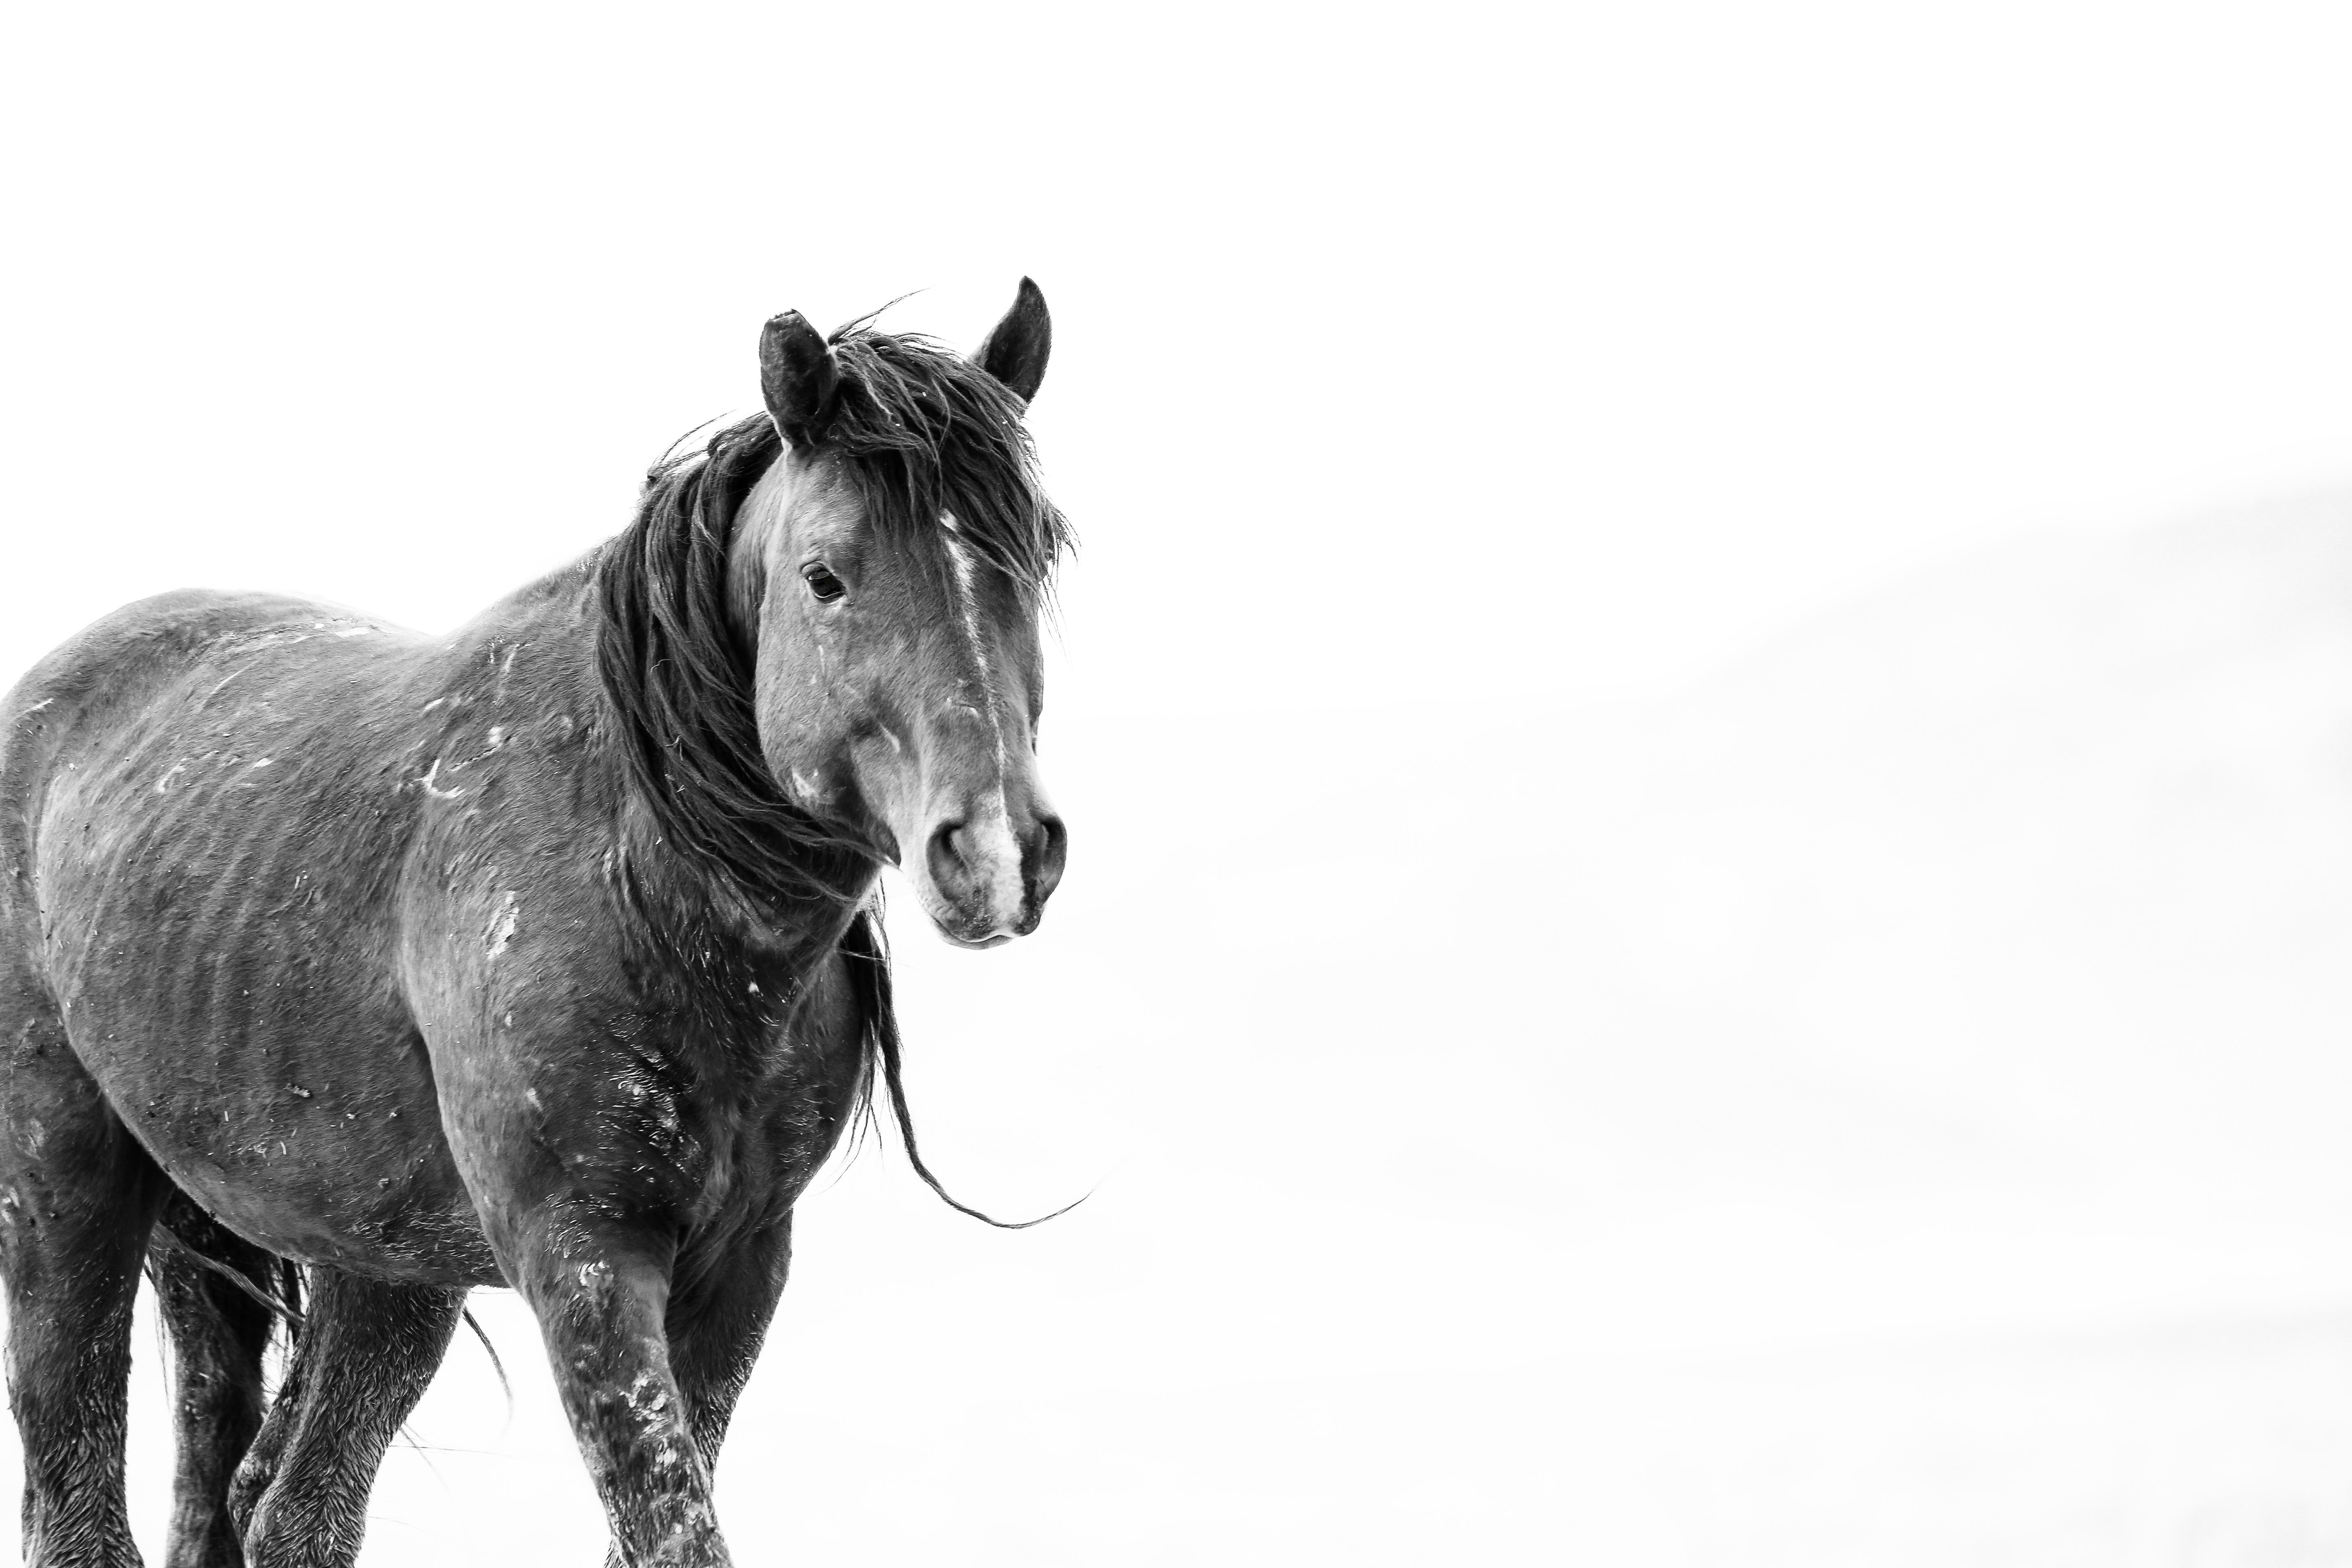 Shane Russeck Animal Print – SOLO 36x48  Schwarz-Weiß-Fotografie, Senffotografie mit Wildpferden